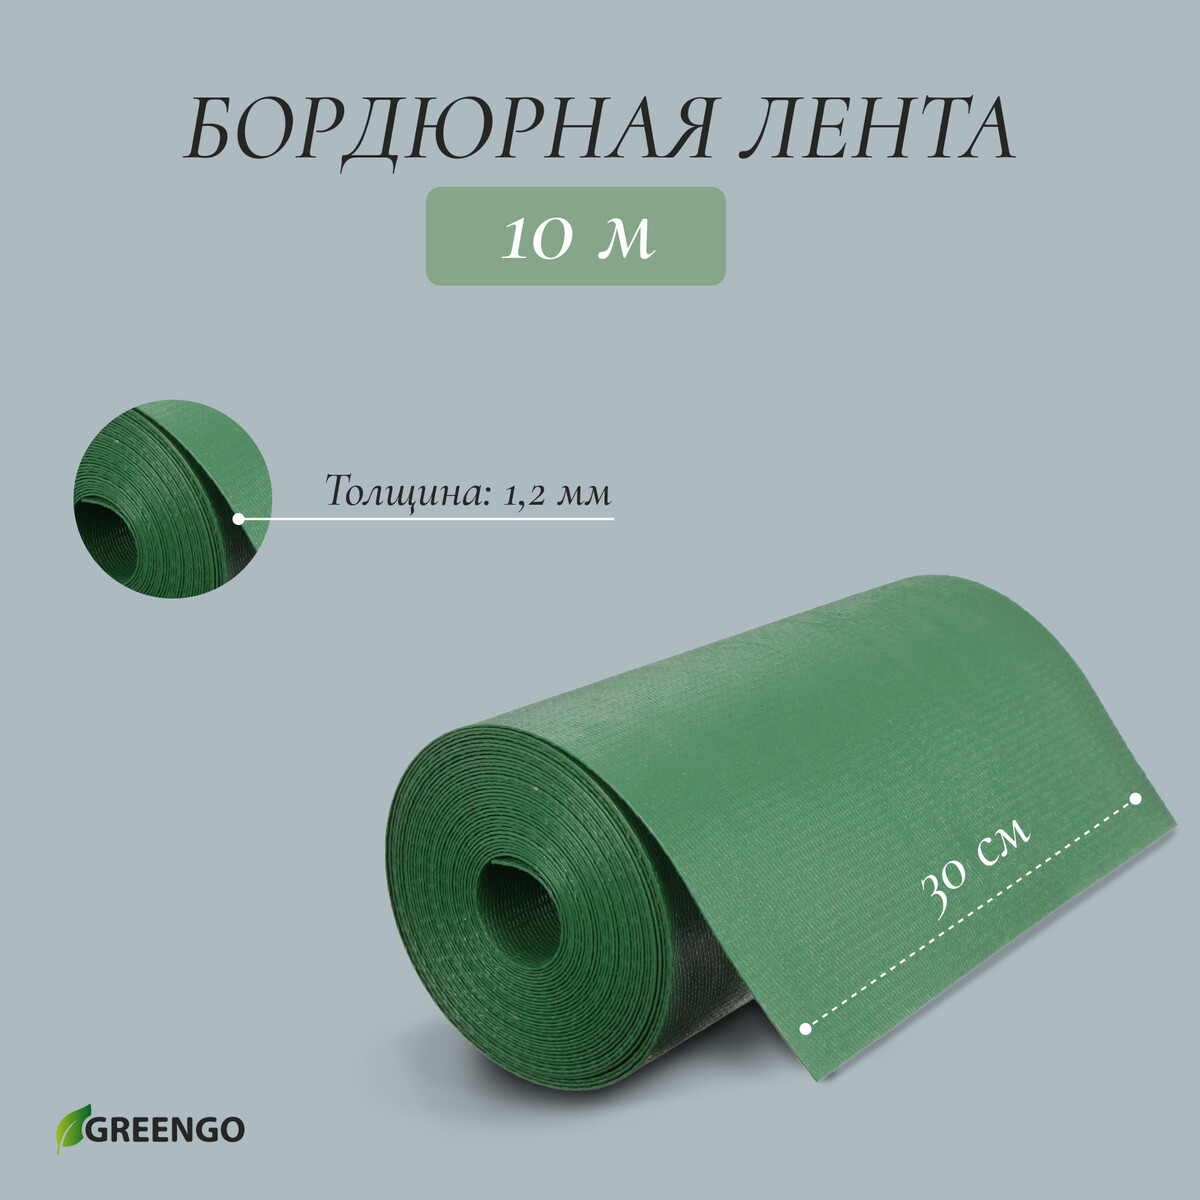 Лента бордюрная, 0.3 × 10 м, толщина 1.2 мм, пластиковая, зеленая, greengo лента бордюрная 0 15 × 9 м толщина 1 2 мм пластиковая фигурная зеленая